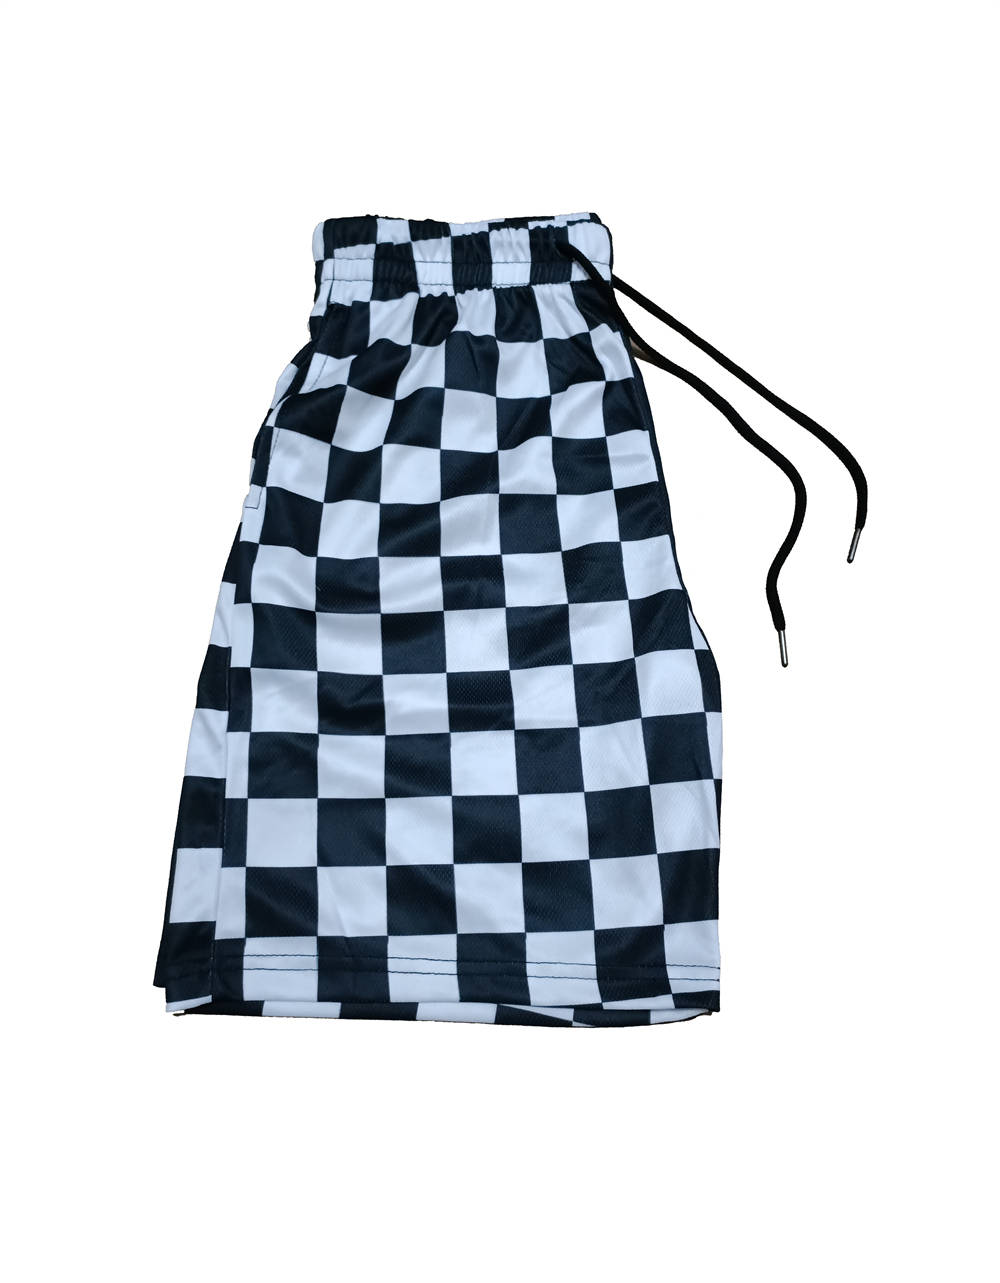 Checkered Shorts™